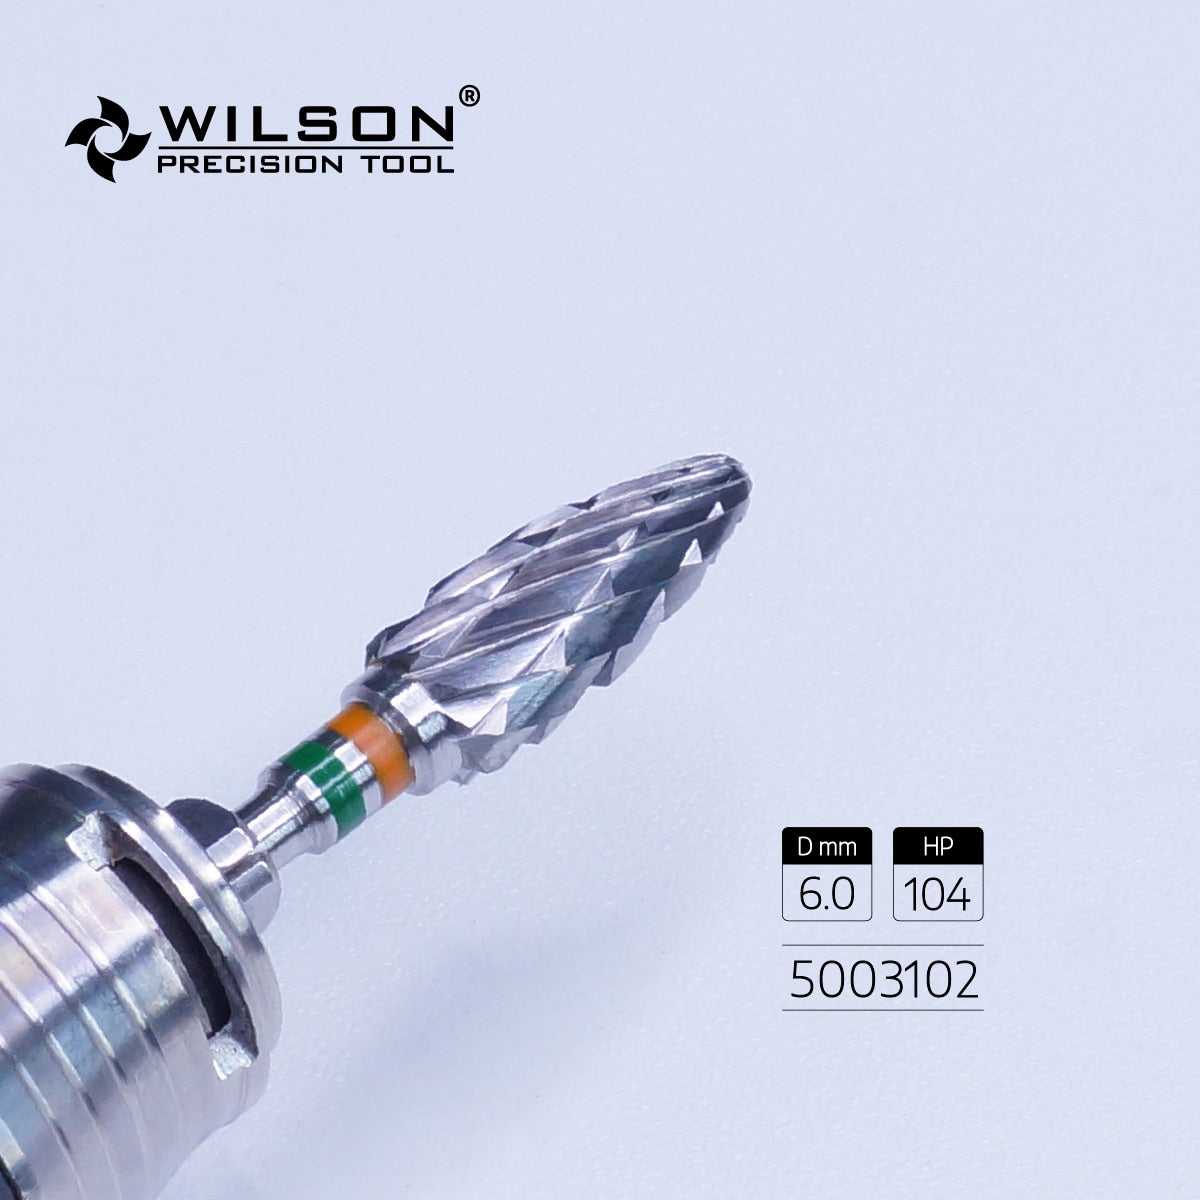 Wilson Precision Tools Carbide Dental Lab Bur Pieza De Baja Velocidad For Trimming Resin